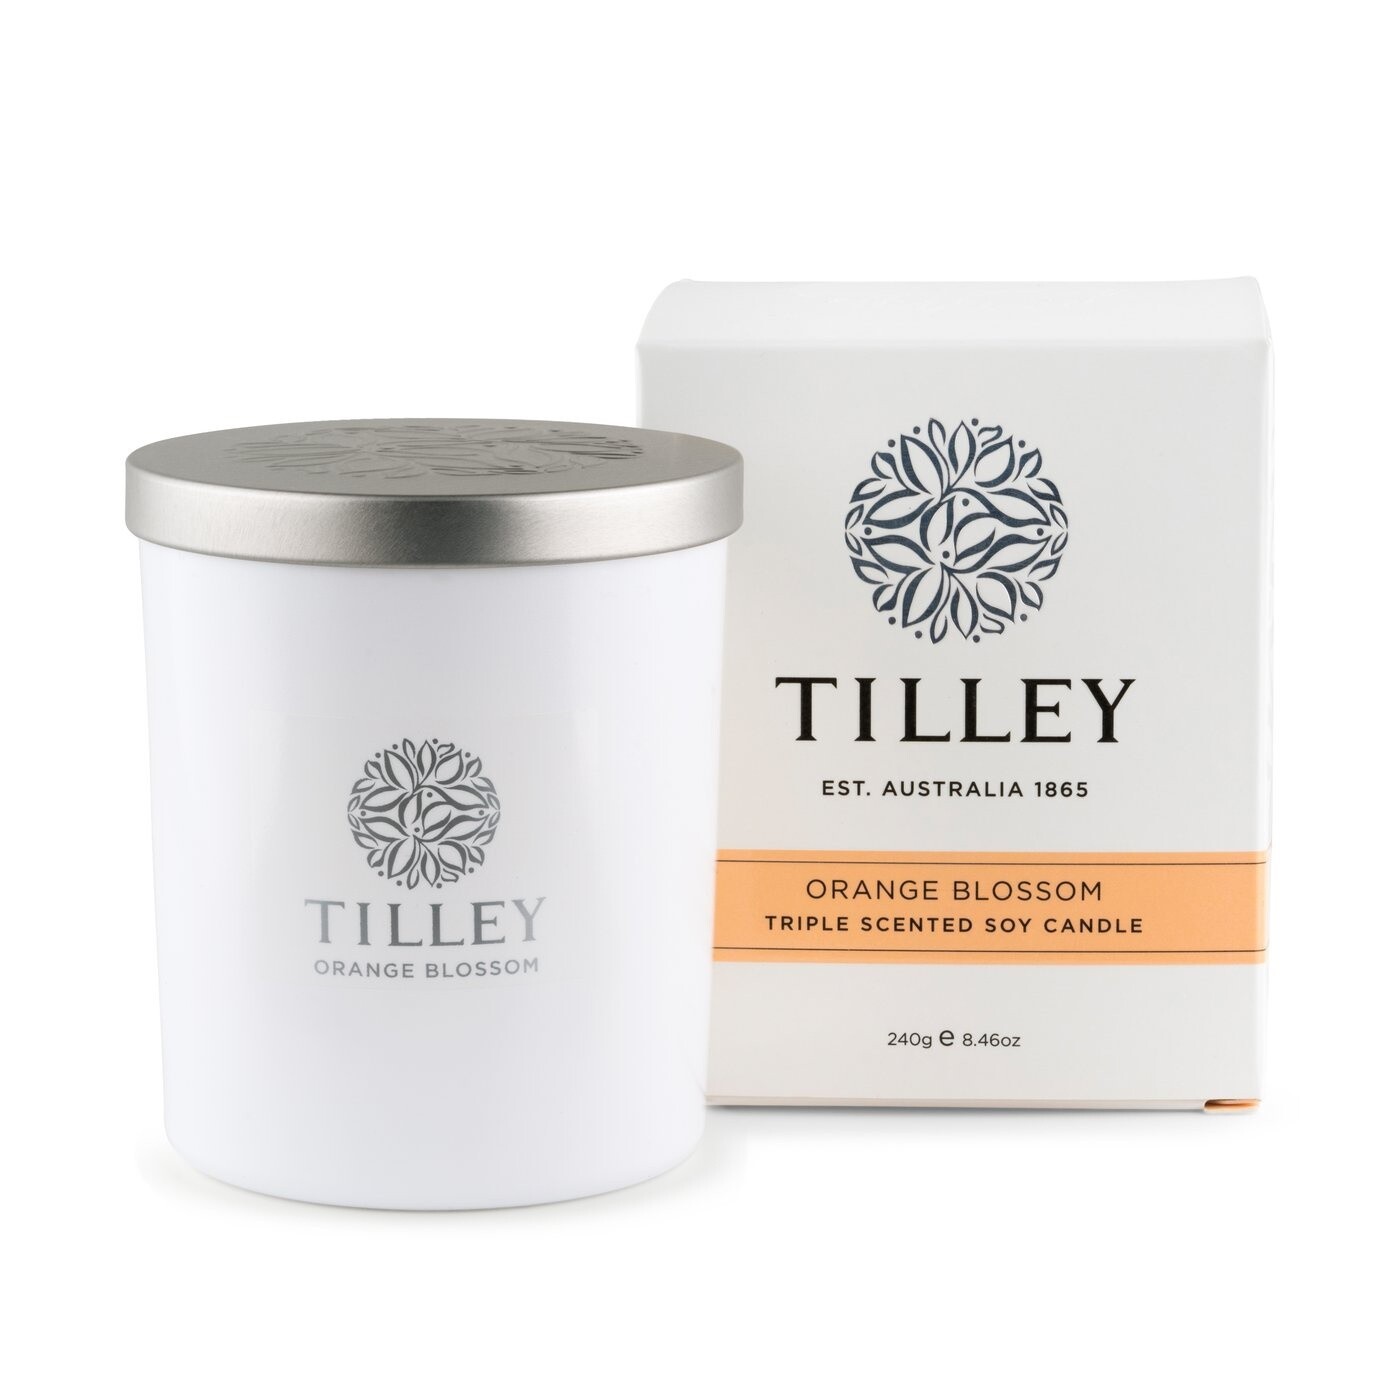 Tilley Soy Candle Orange Blossom